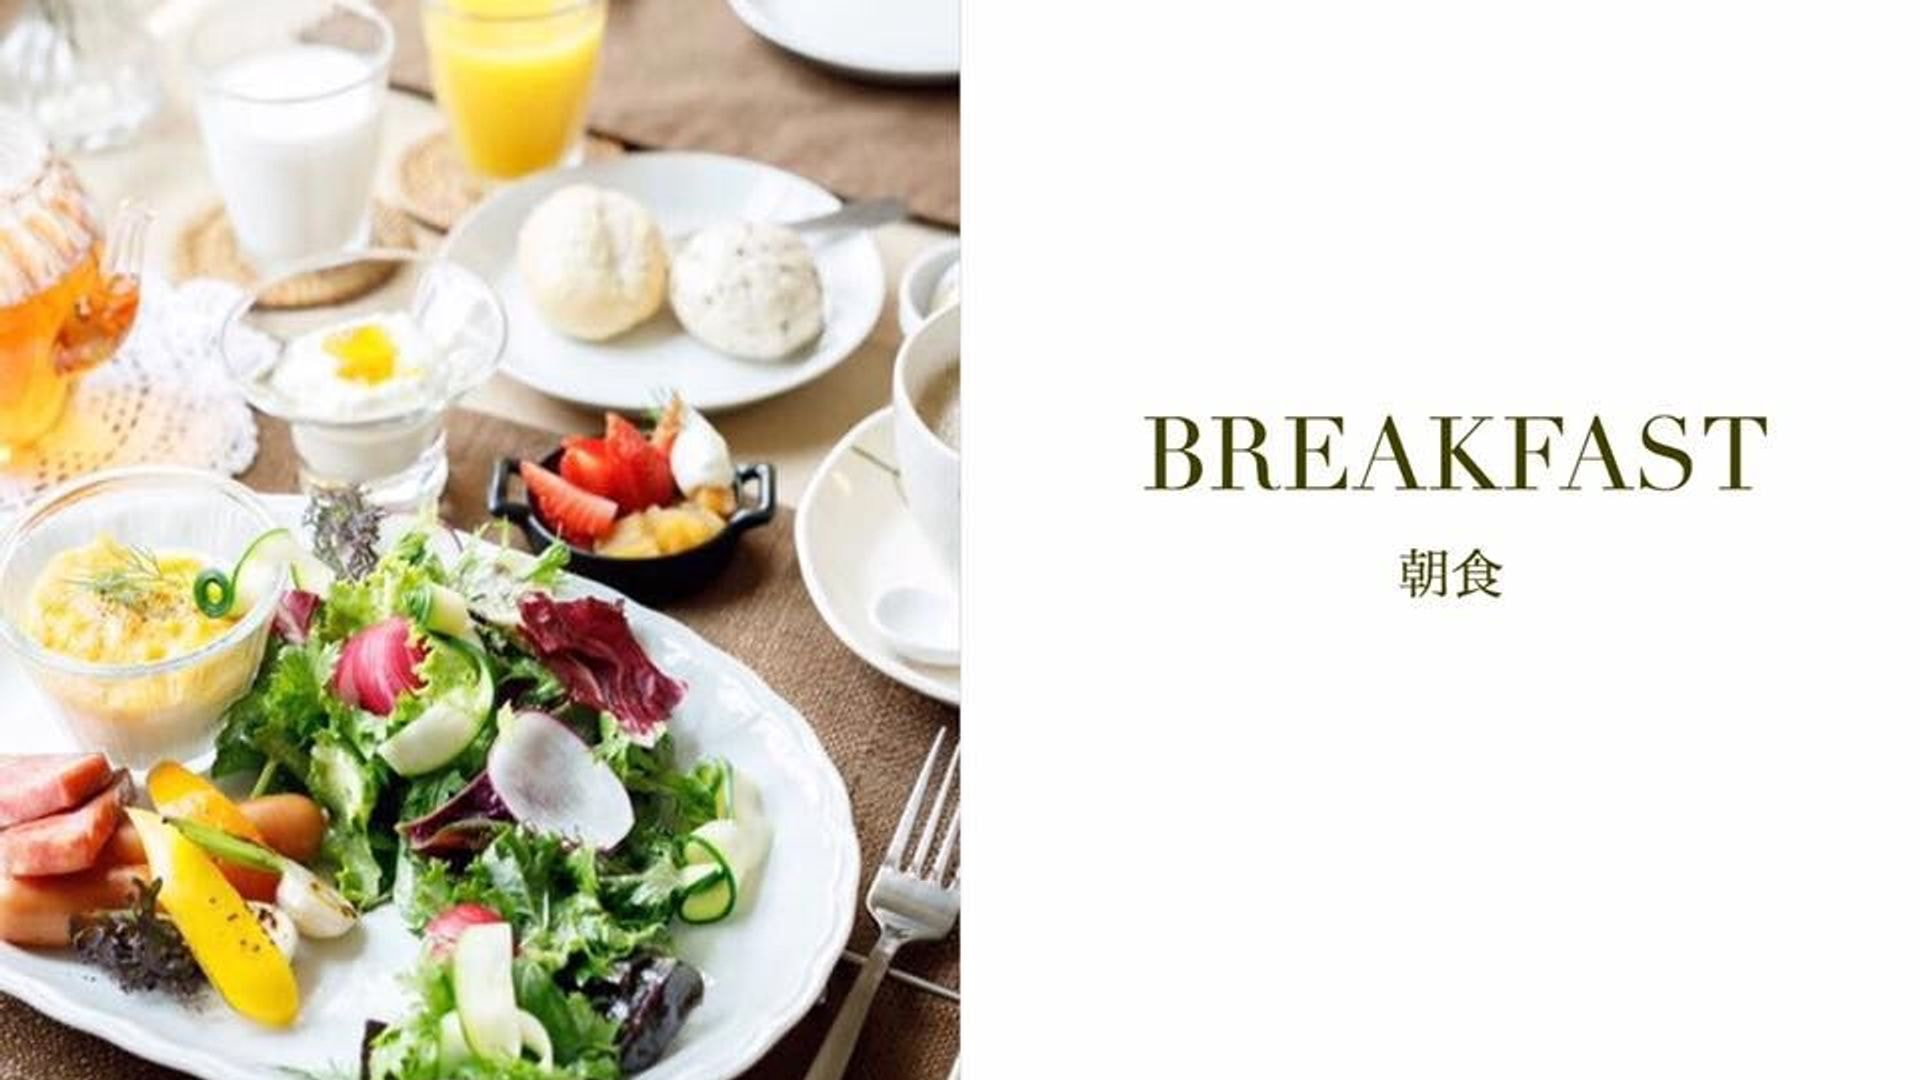 軽井沢塩沢にある朝食が人気のカフェです。ランチとモーニングでご利用いただけます。高原野菜の朝食が大人気です。